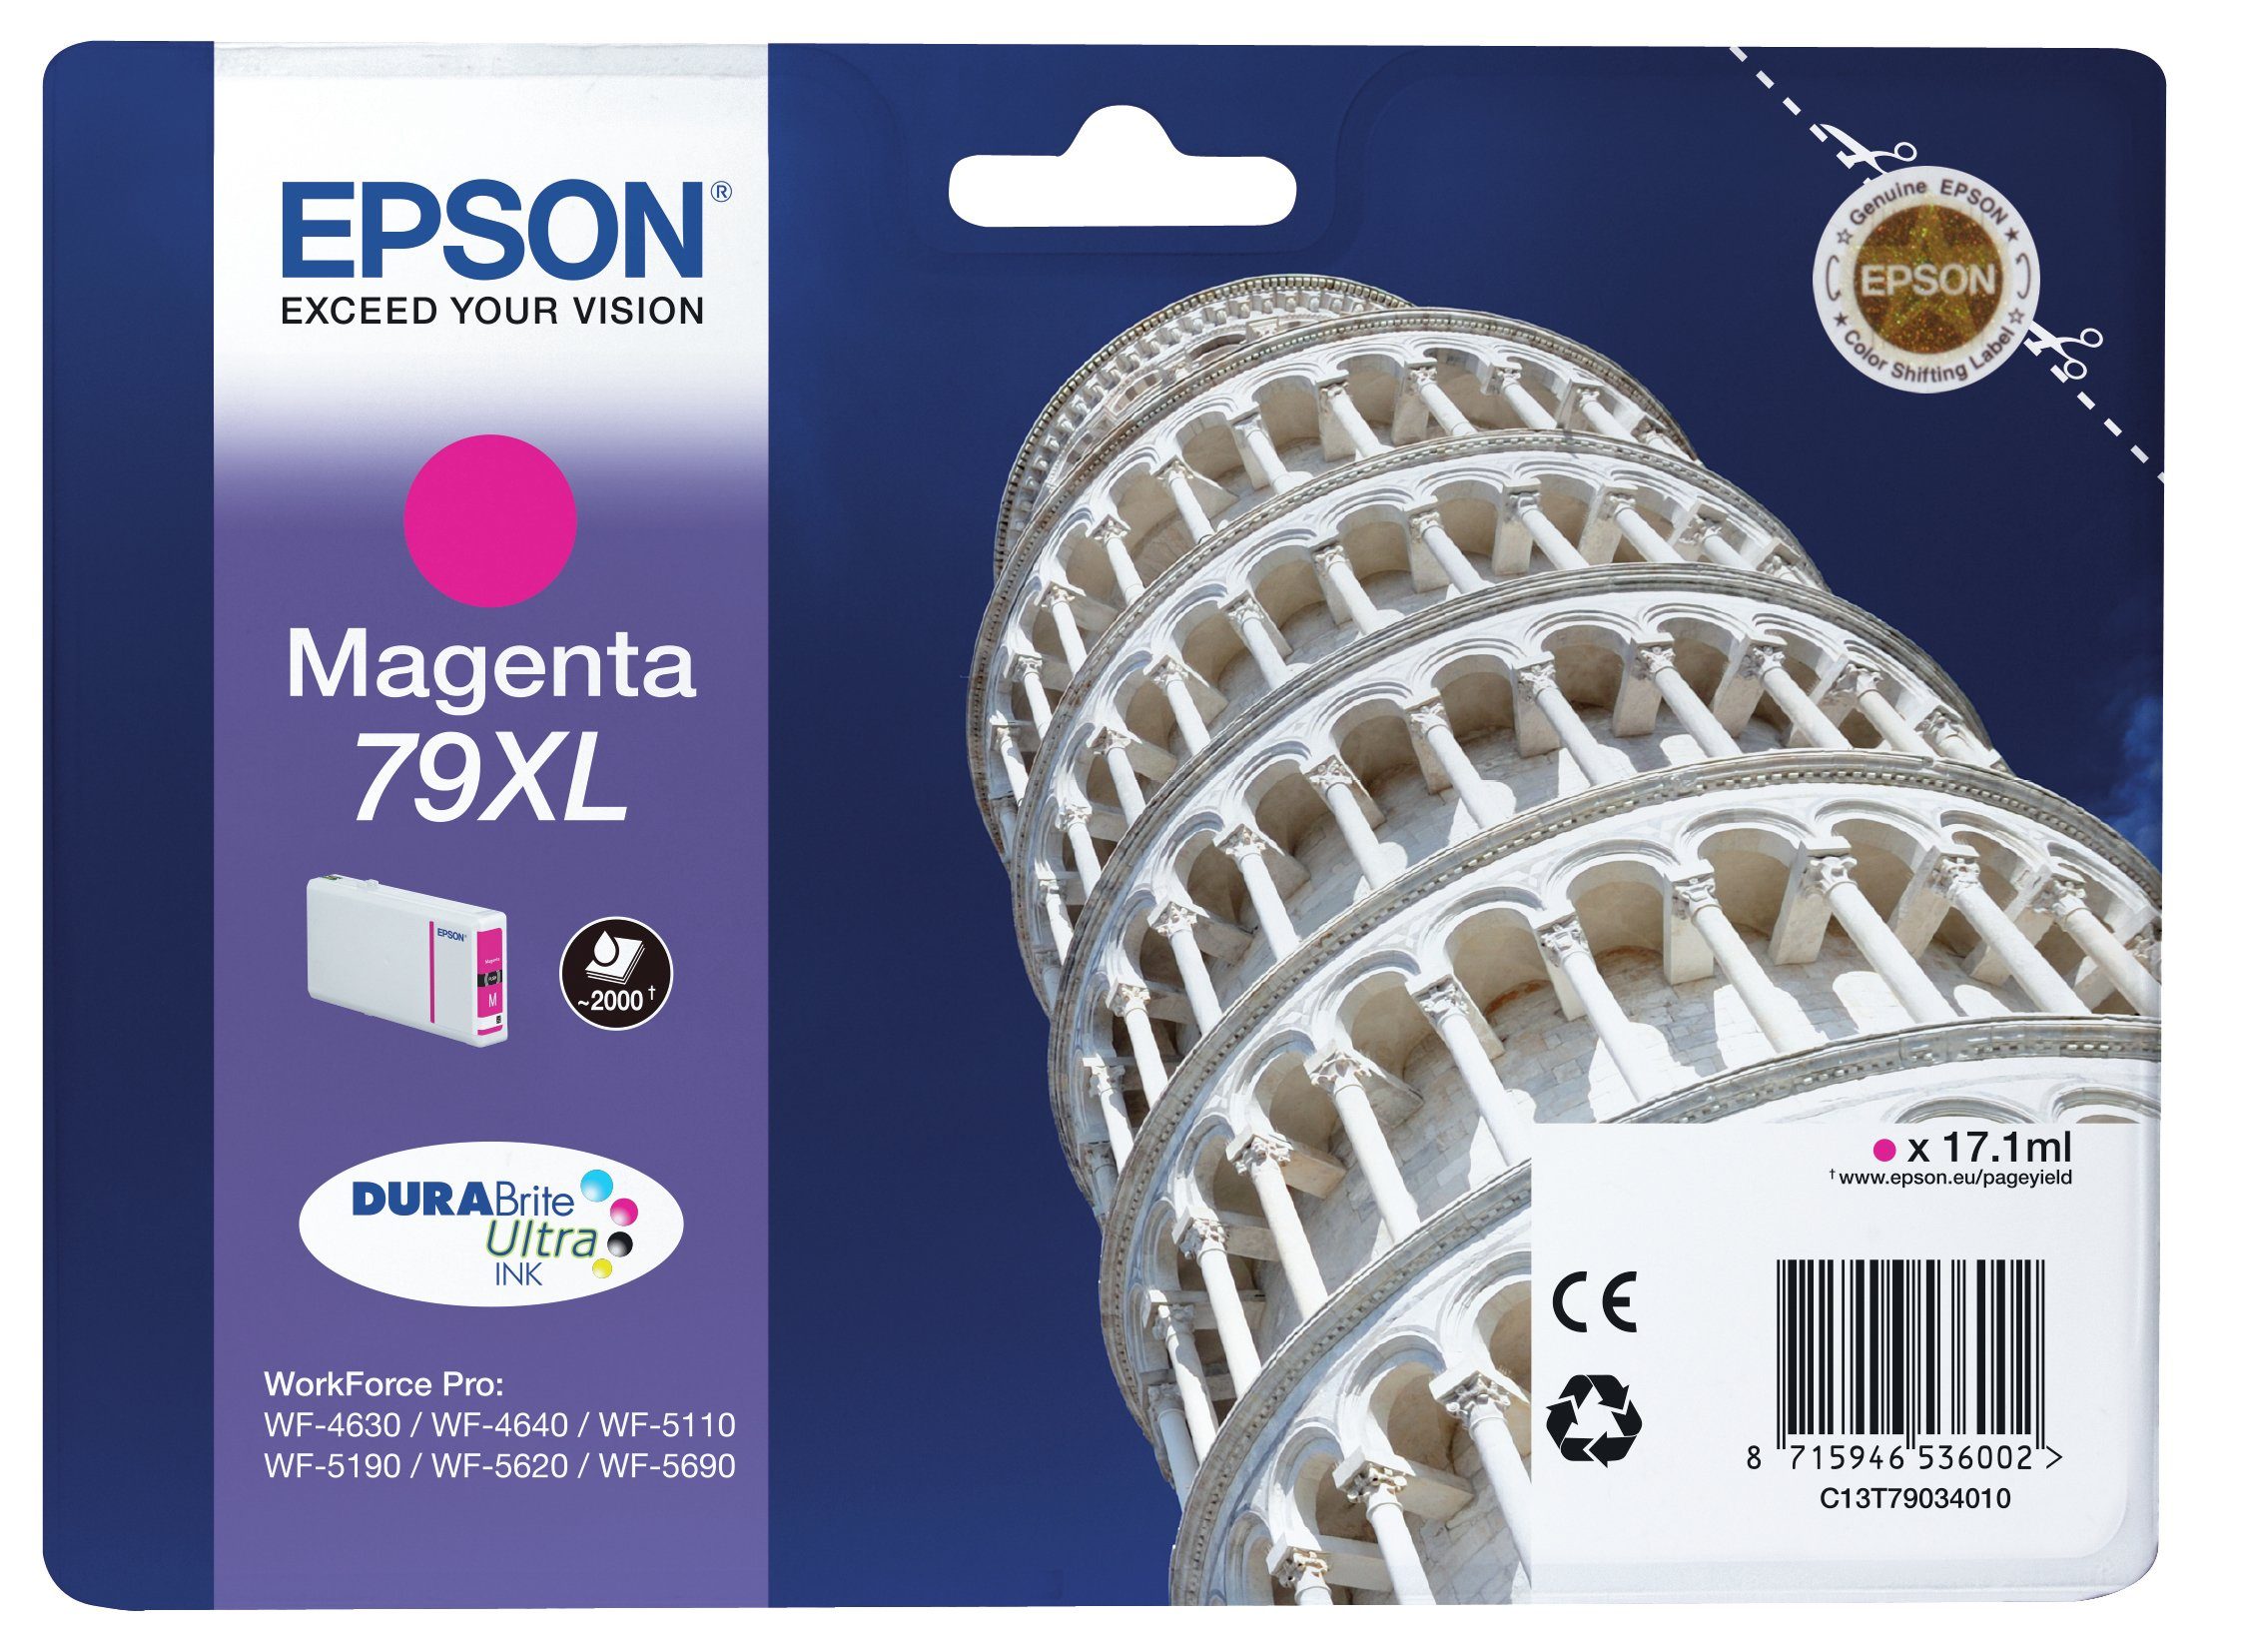 Epson Epson Tower of Pisa Tintenpatrone 79XL Magenta Tintenpatrone